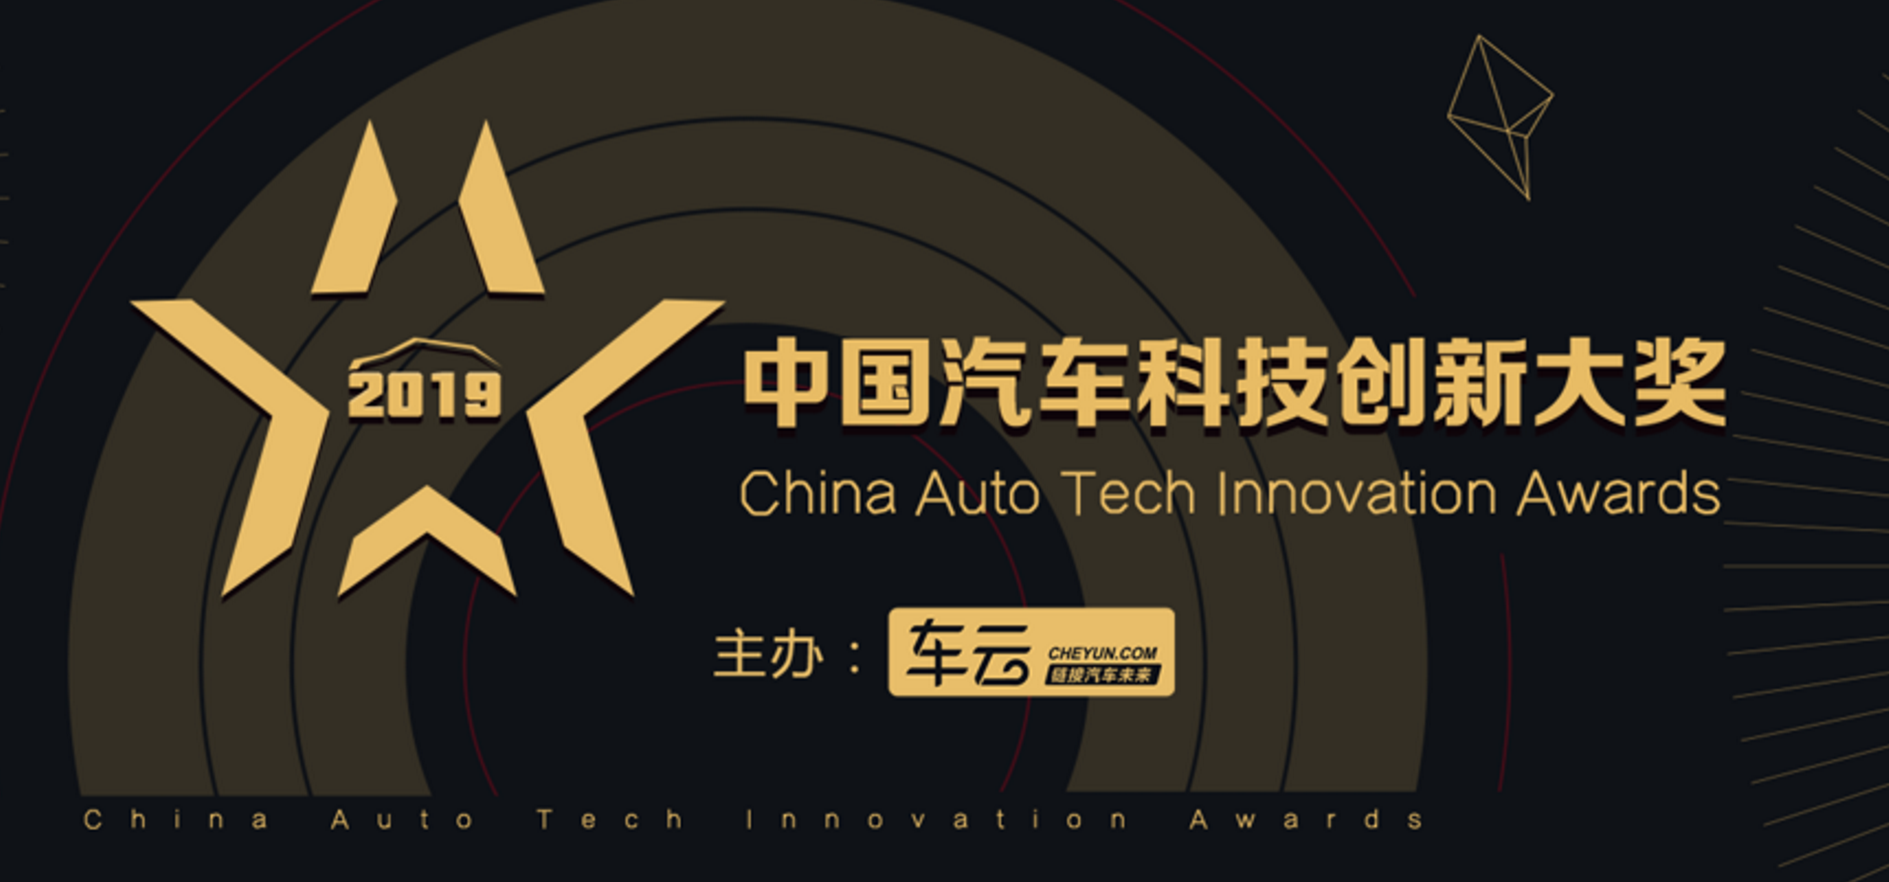 欧宝平台链接汽车未来2019中国汽车科技创新大奖榜单正式揭晓！(图1)